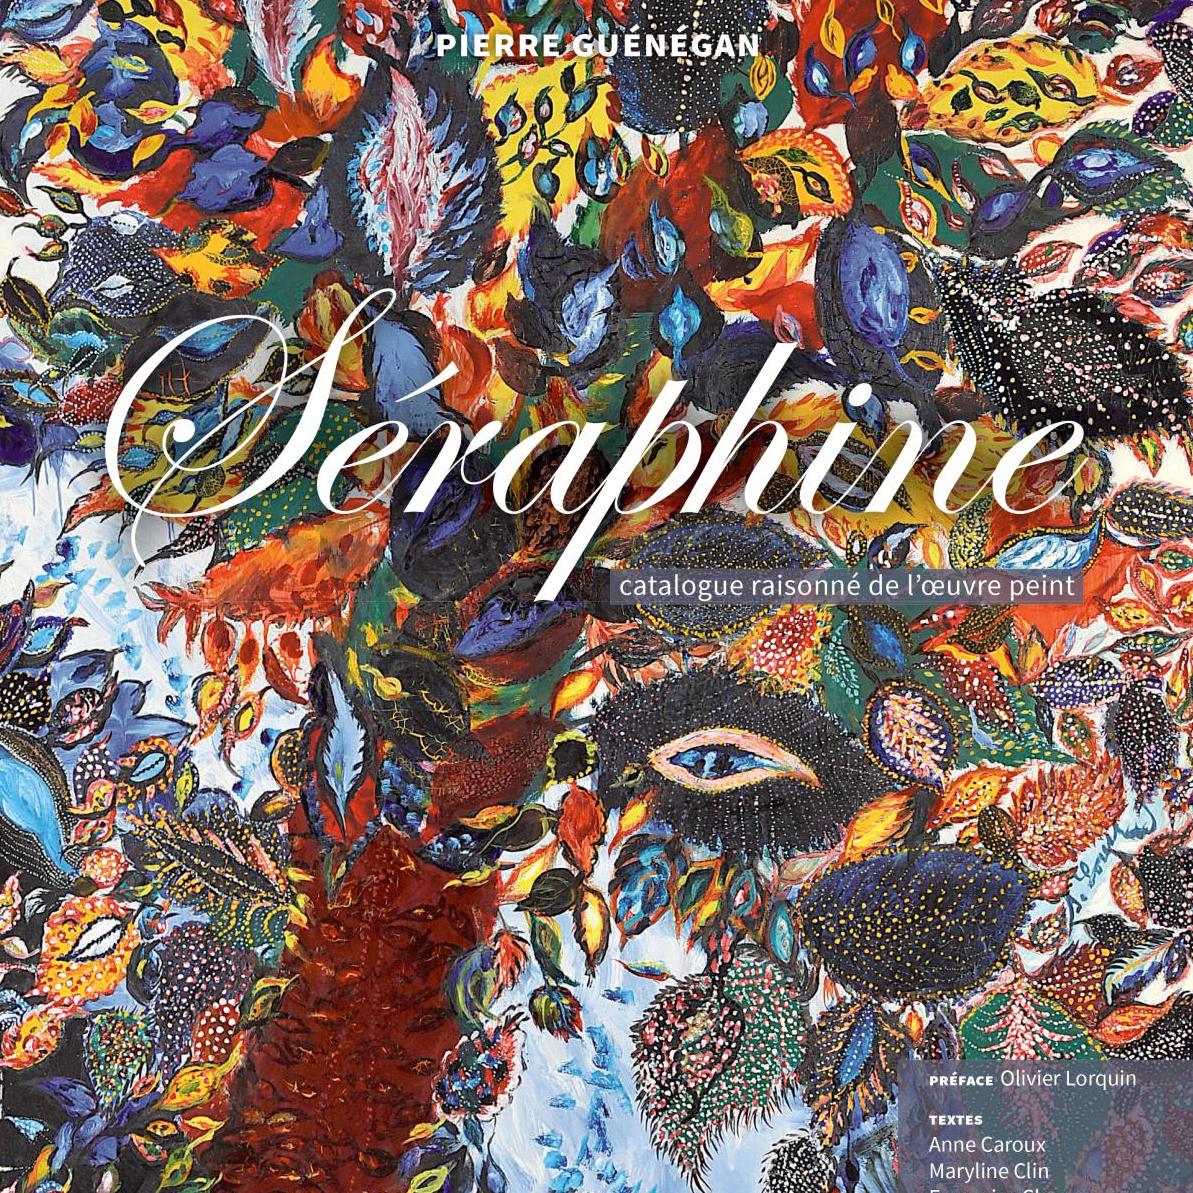 Catalogue raisonné : Séraphine, angélique naïveté - A lire, à voir